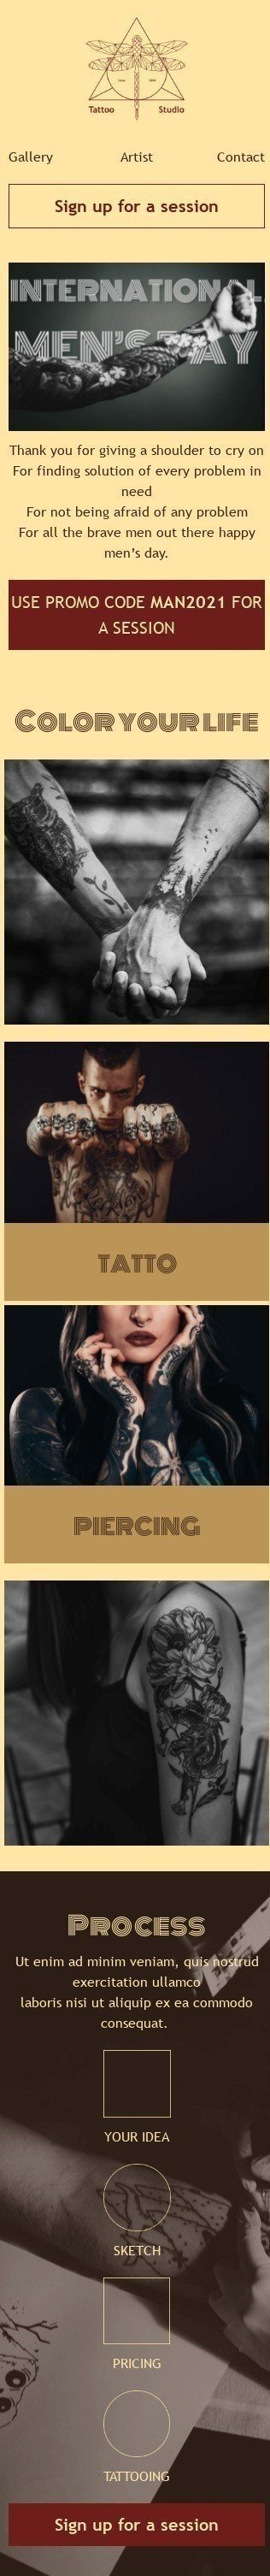 Plantilla de correo electrónico «Estudio de tatuajes» de Día Internacional del Hombre para la industria de Belleza y cuidado personal Vista de móvil